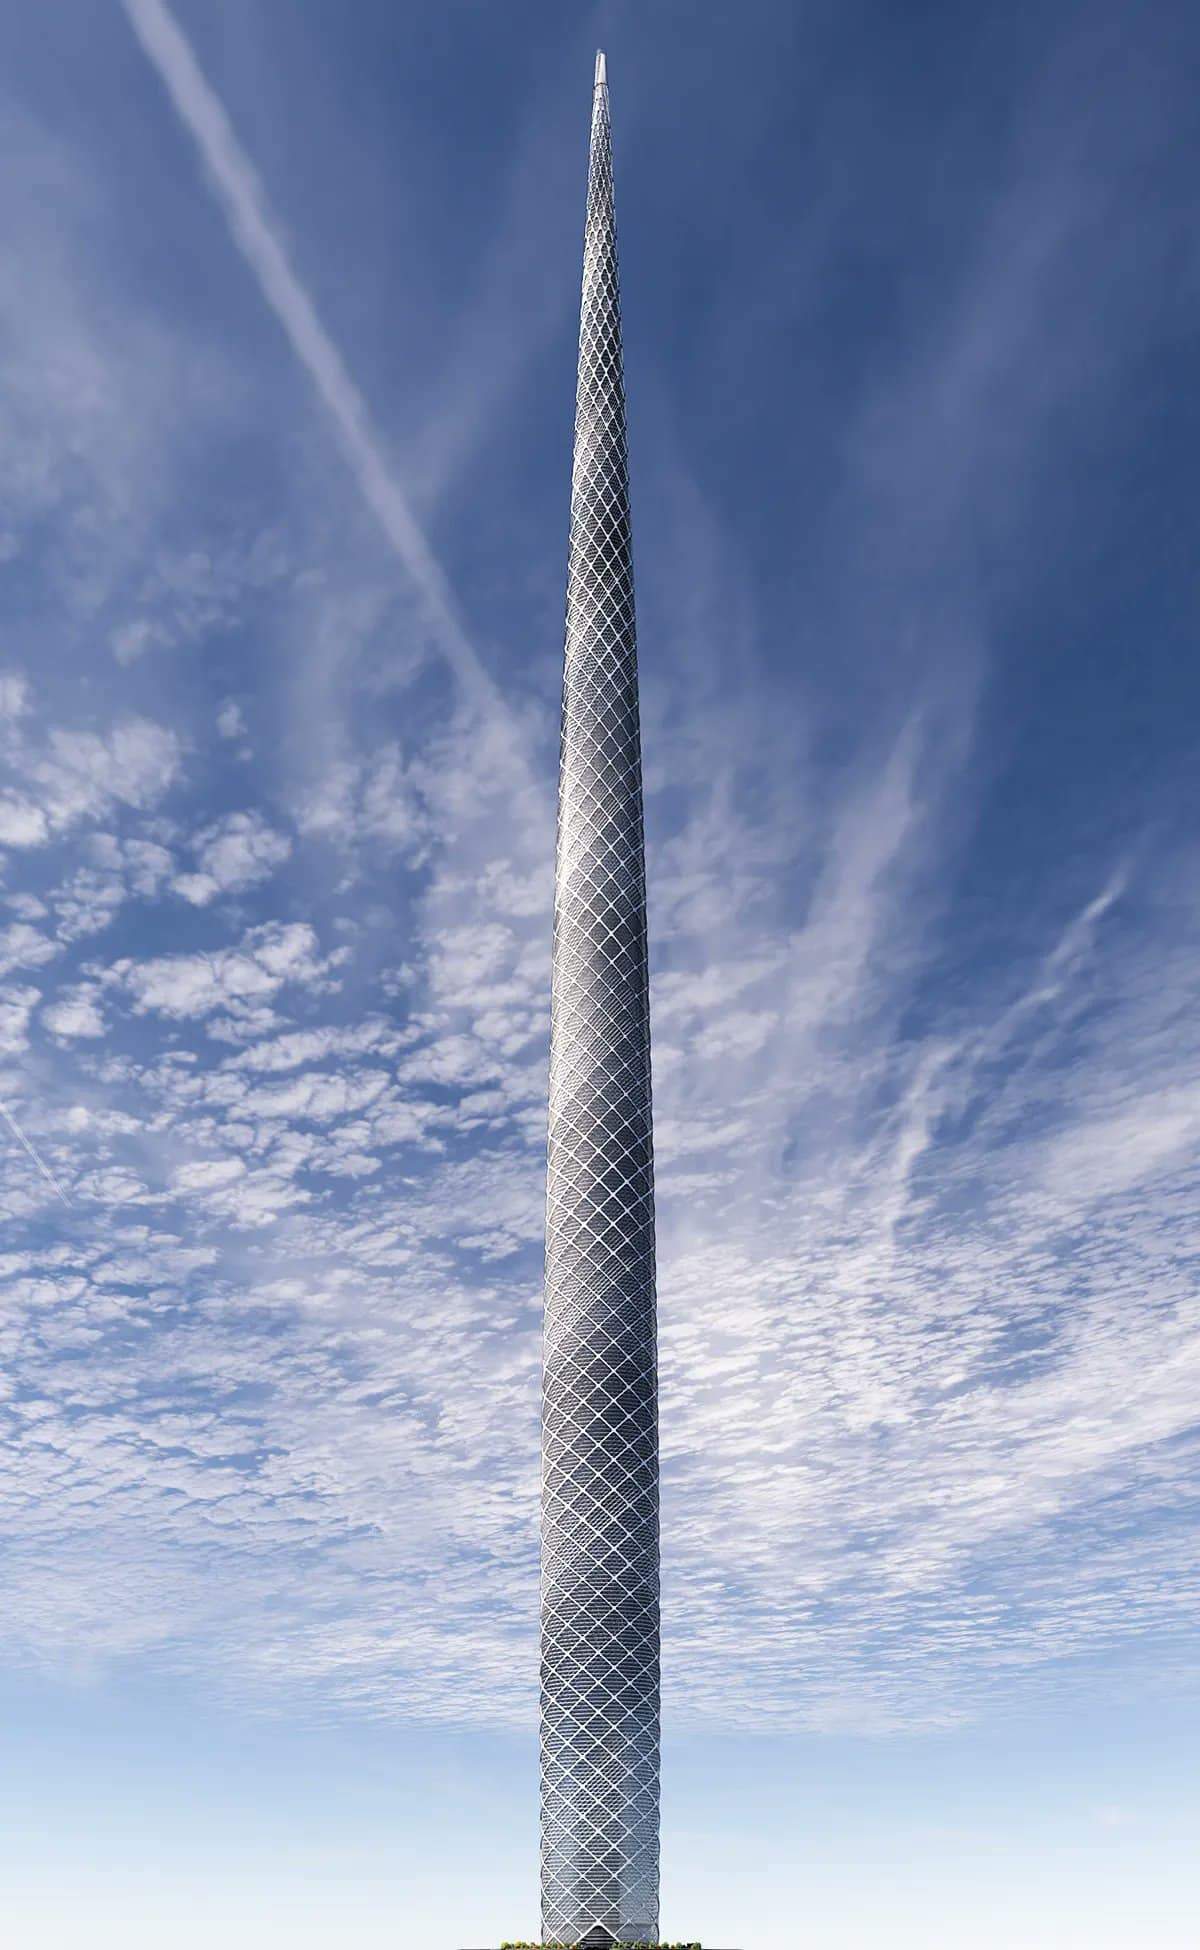 برج Aero: بين التطلعات وردود الفعل المتحفظة حول التصميم المعماري